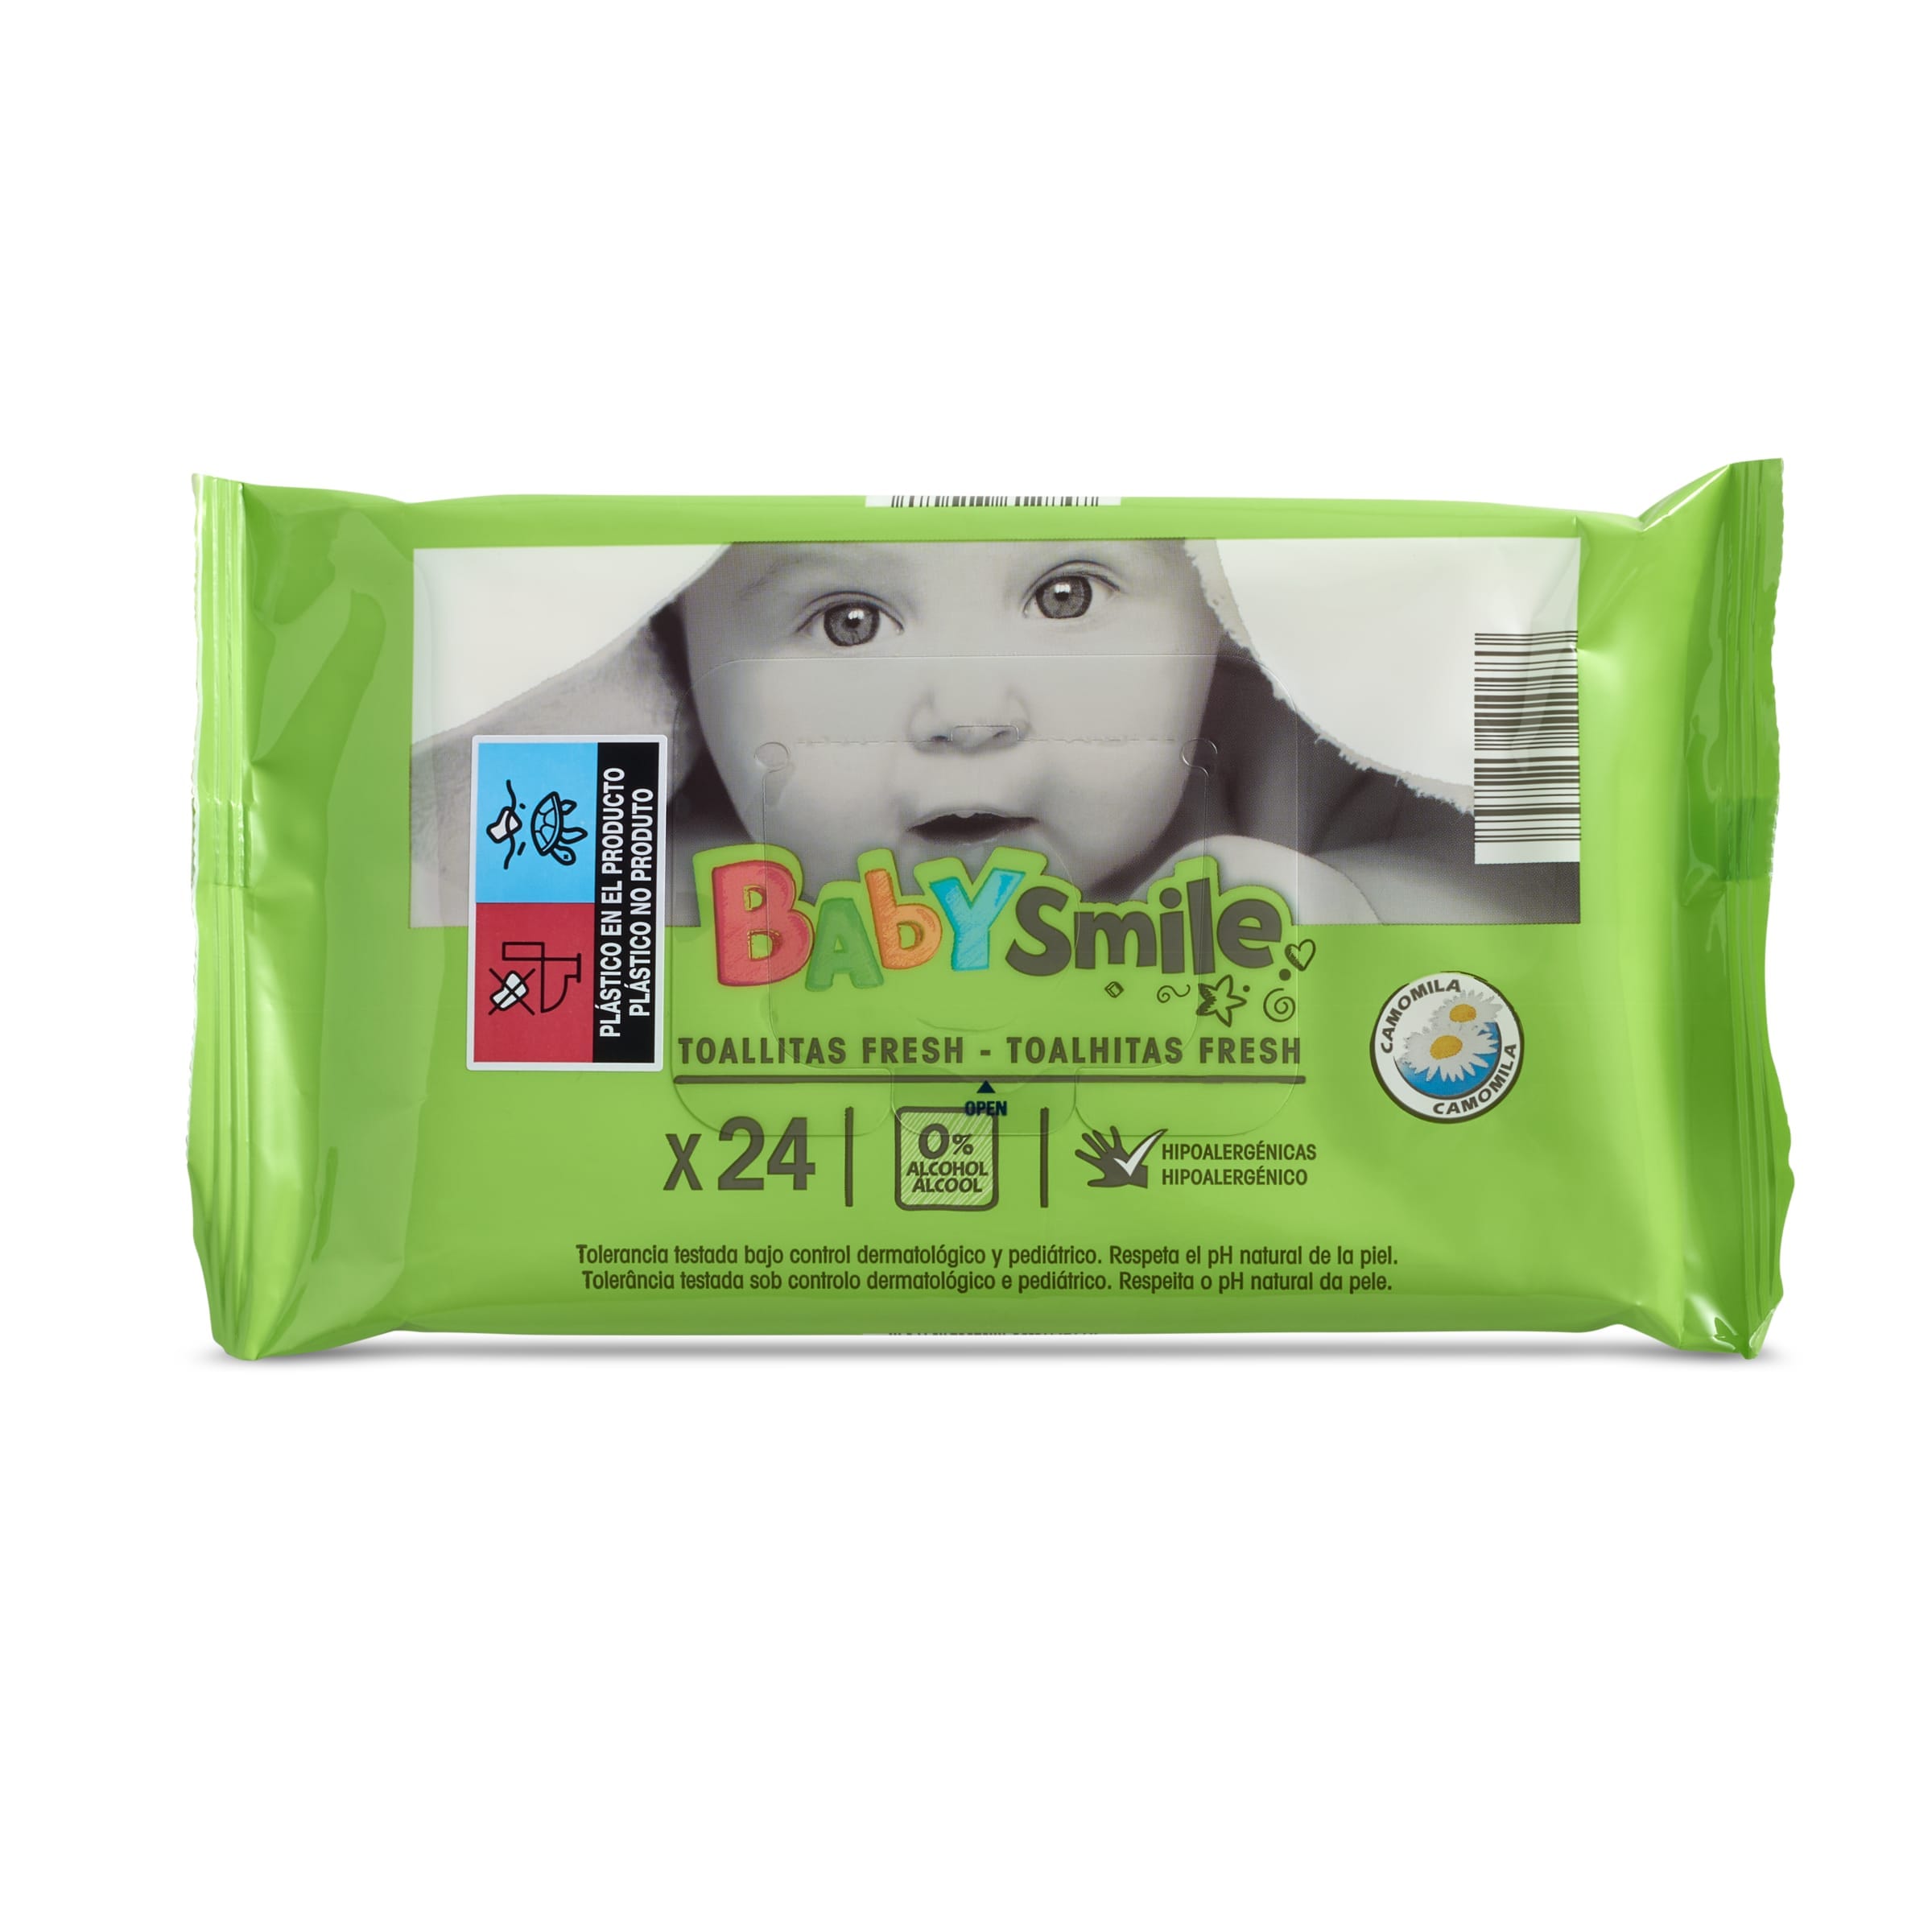 Toallitas para bebés BabySmile bolsa 24 unidades - Supermercados DIA